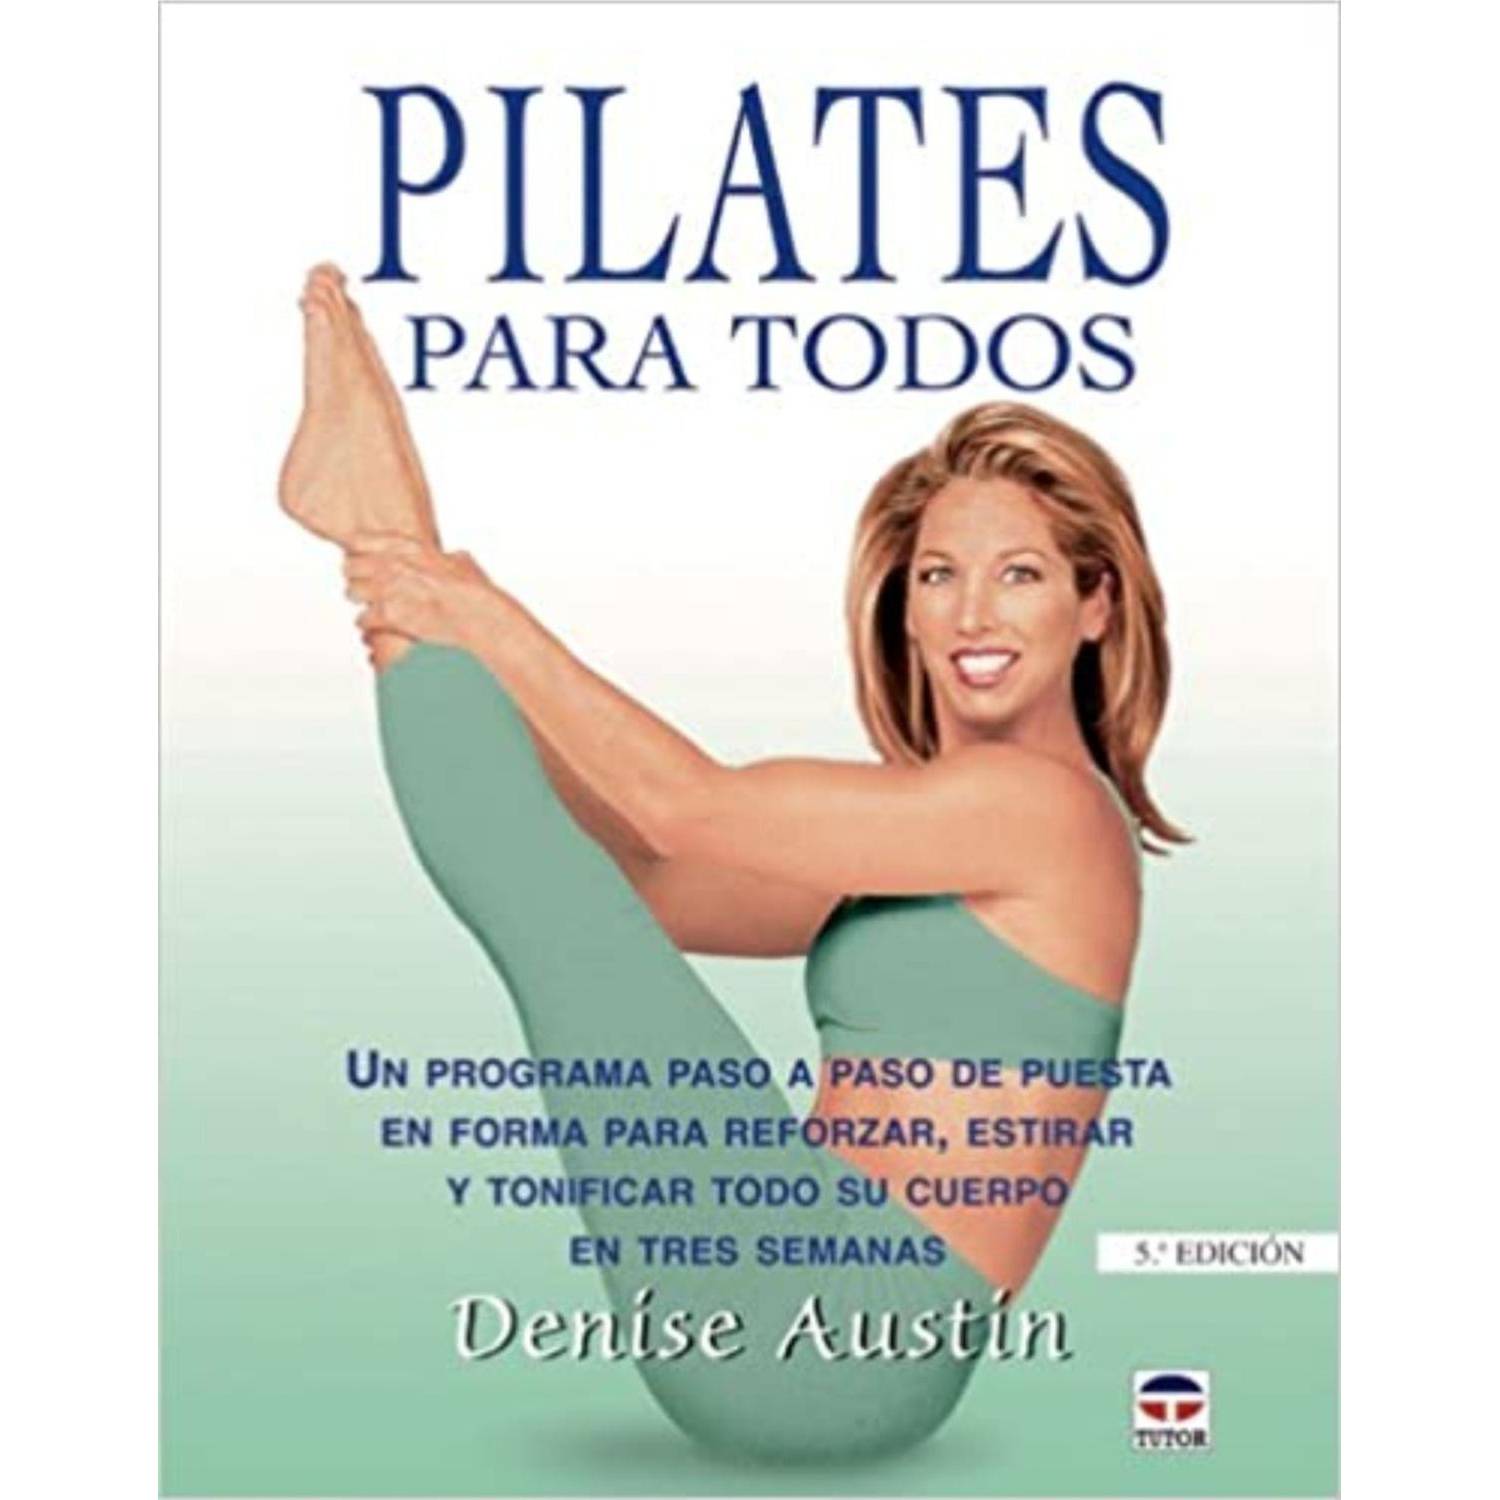 Pilates - Envío Gratis*